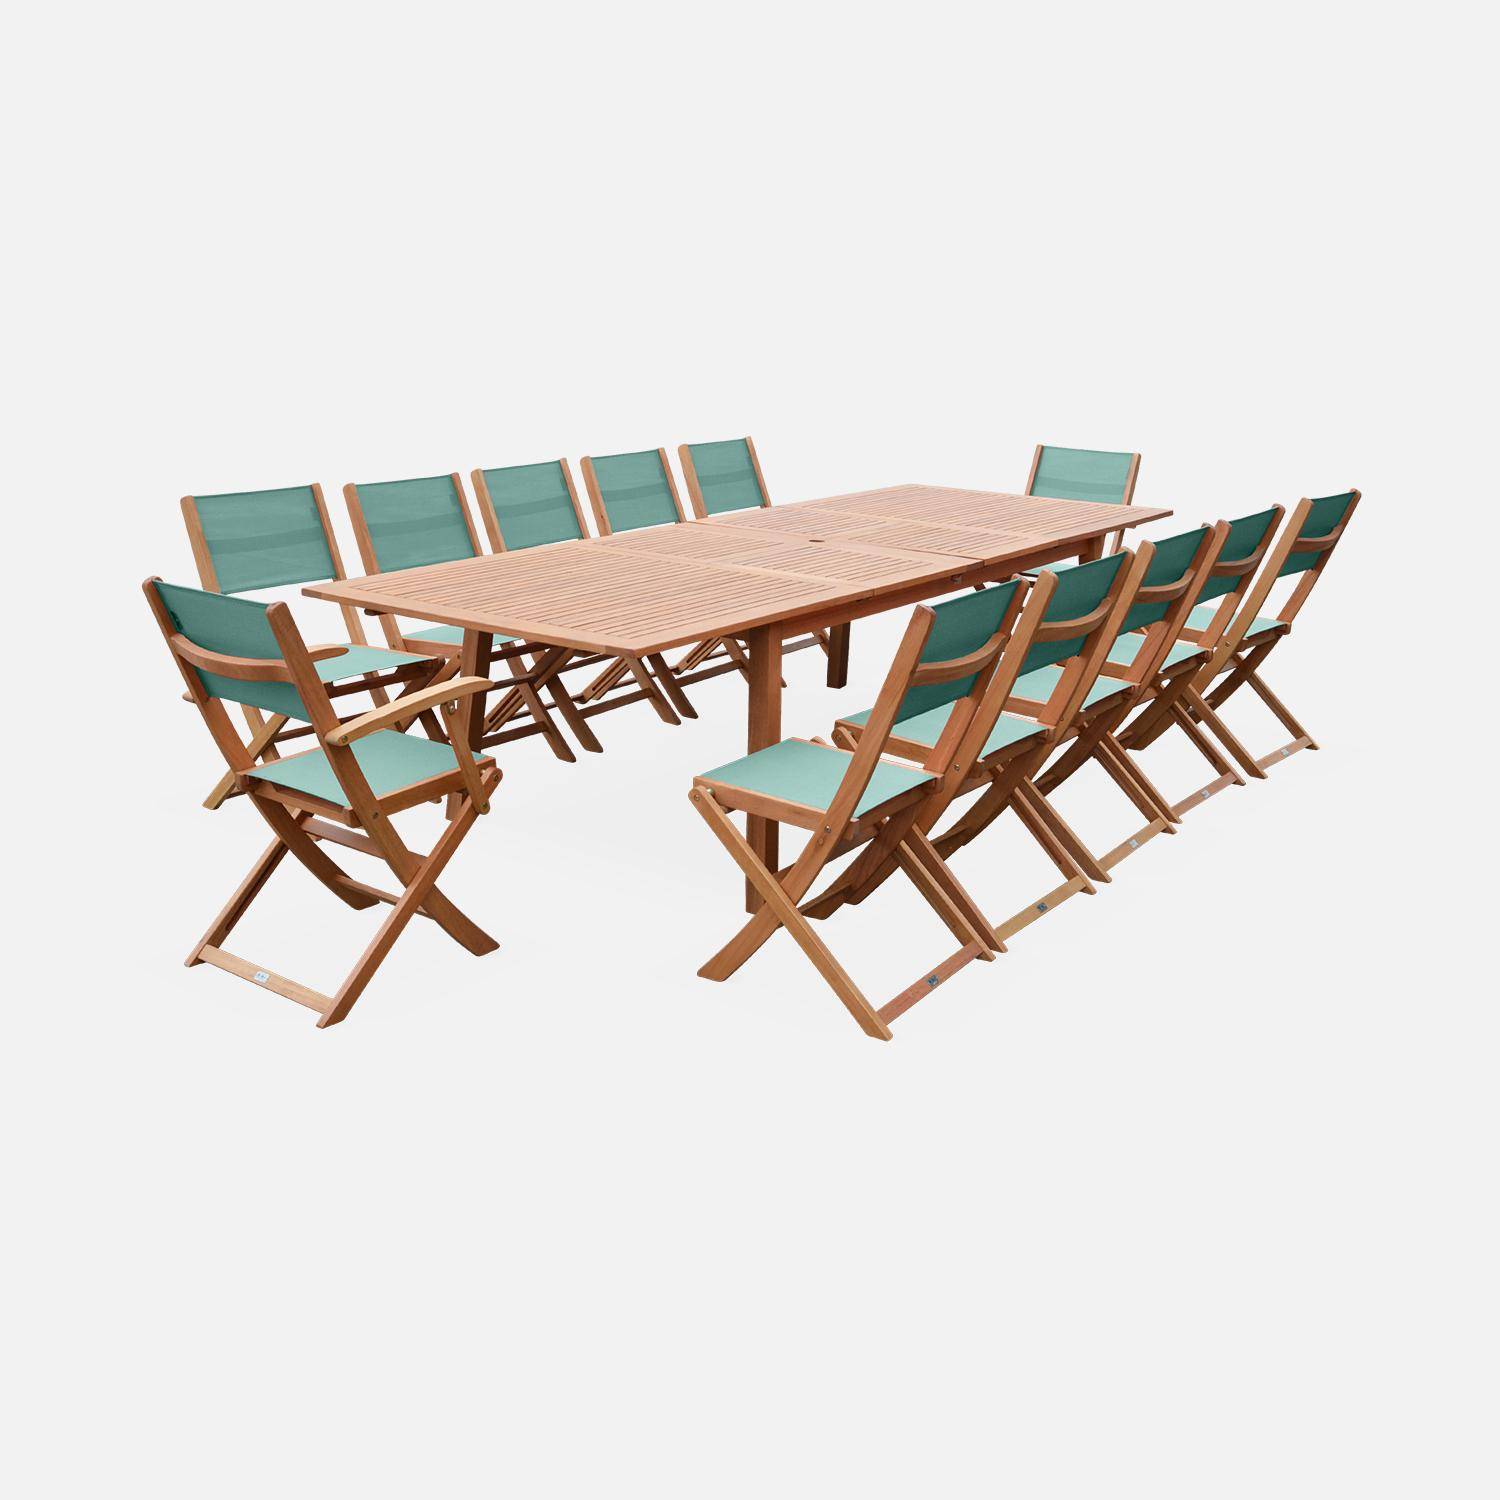 Tavolo da giardino in legno, dimensioni: 200-250-300cm - modello: Almeria - Grande tavolo rettangolare con prolunga, in eucalipto FSC Photo10